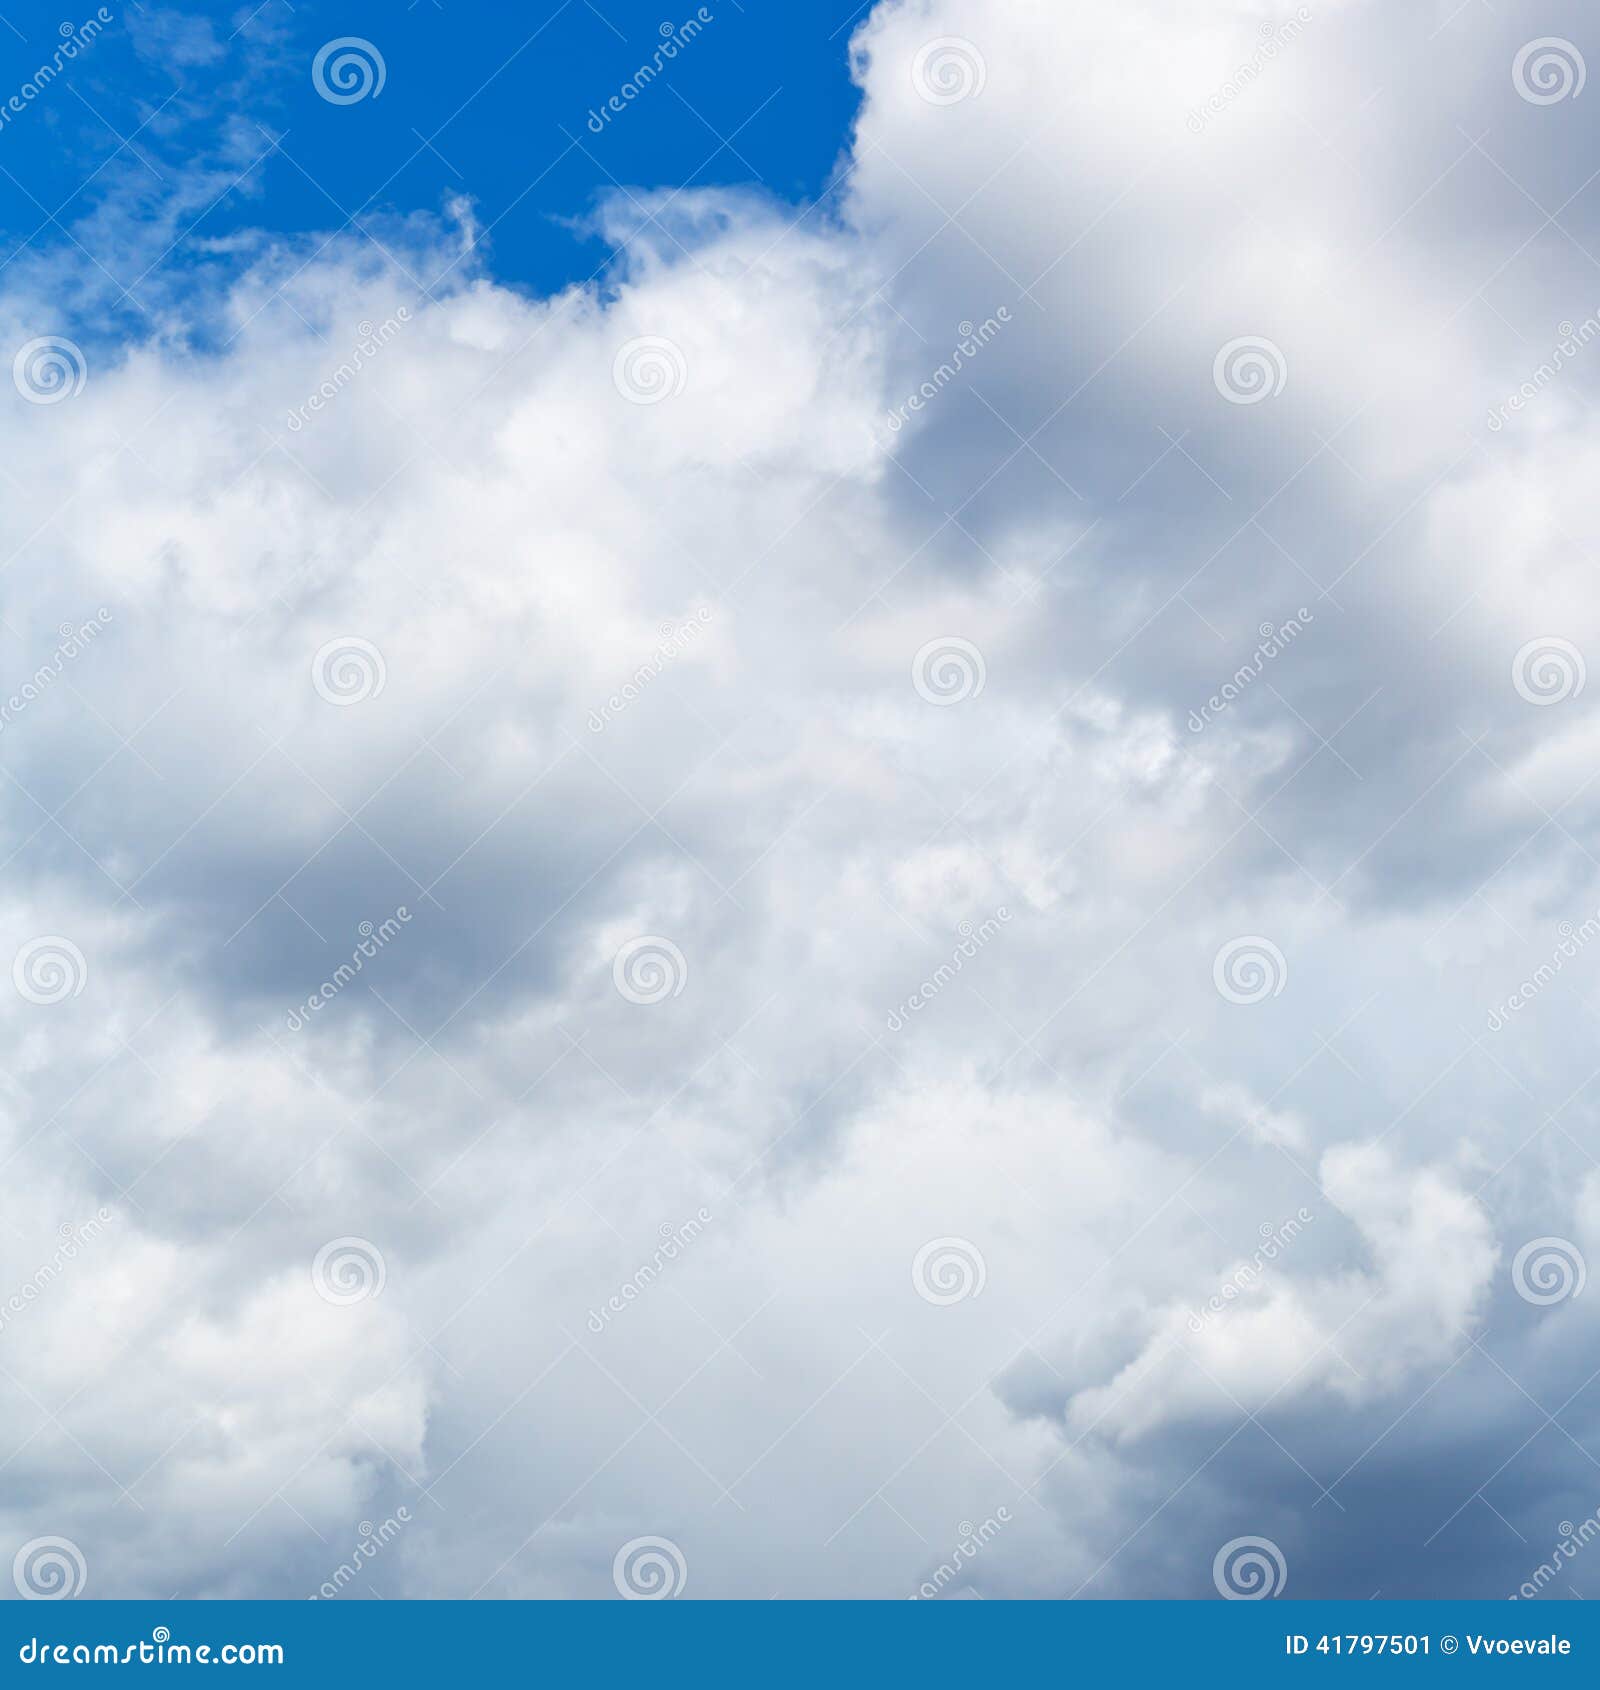 heavy cumuli clouds in blue sky